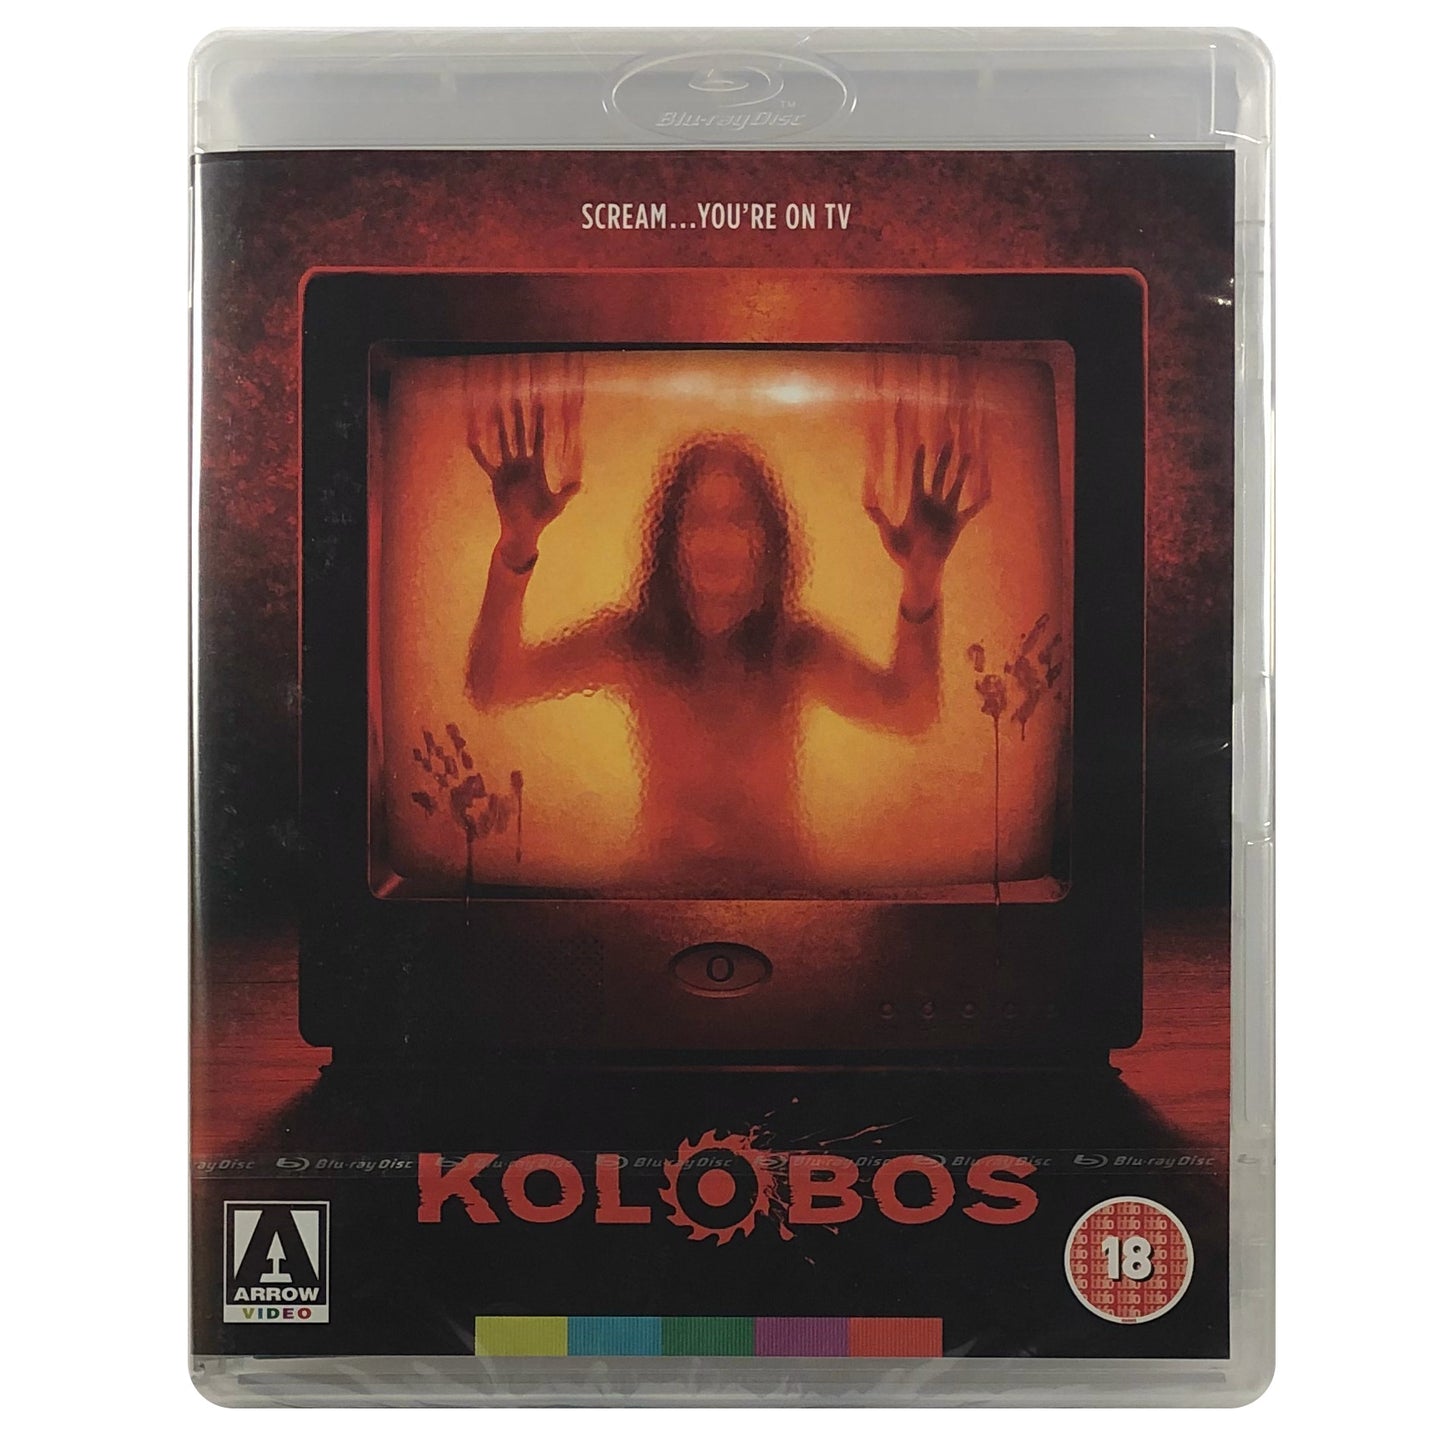 Kolobos Blu-Ray